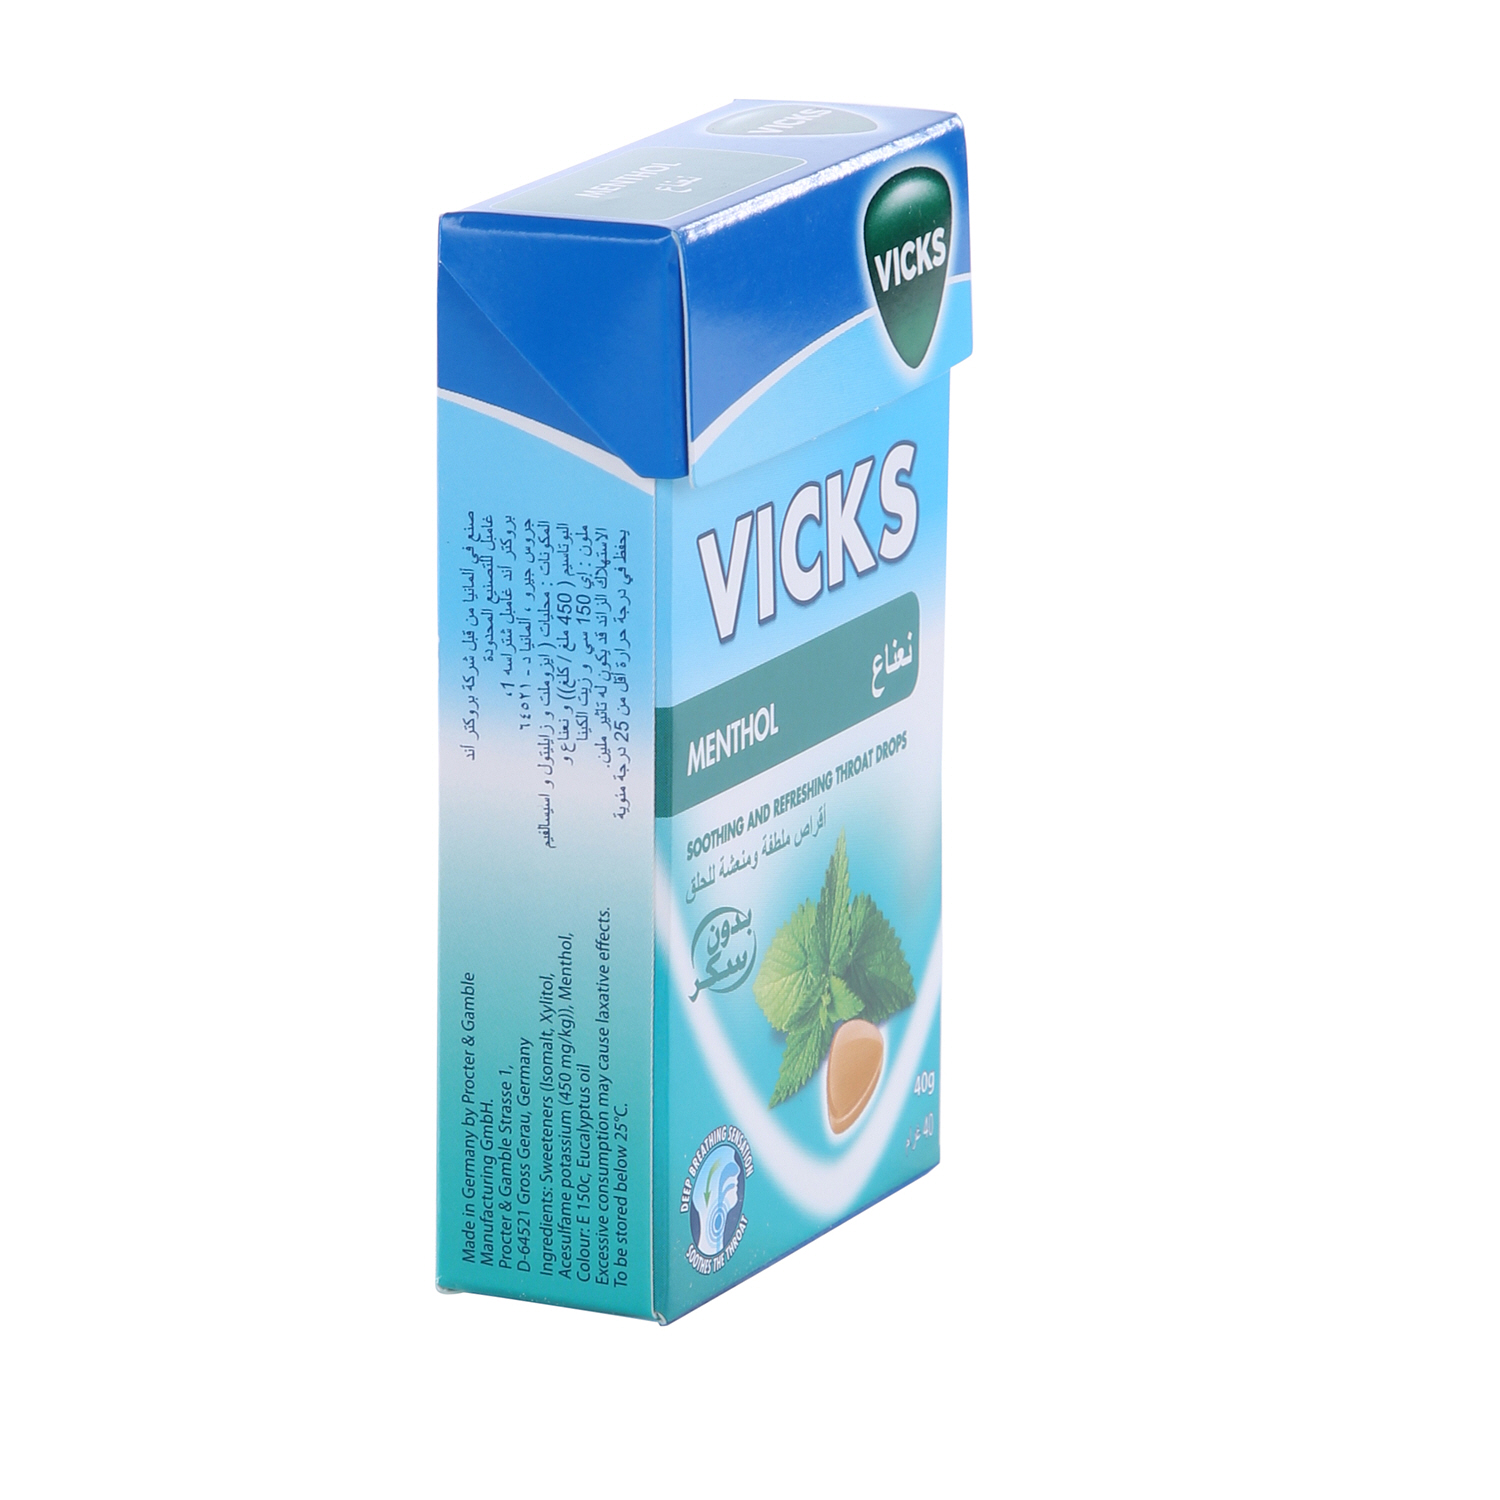 Vicks C Drops Menthol 40 g